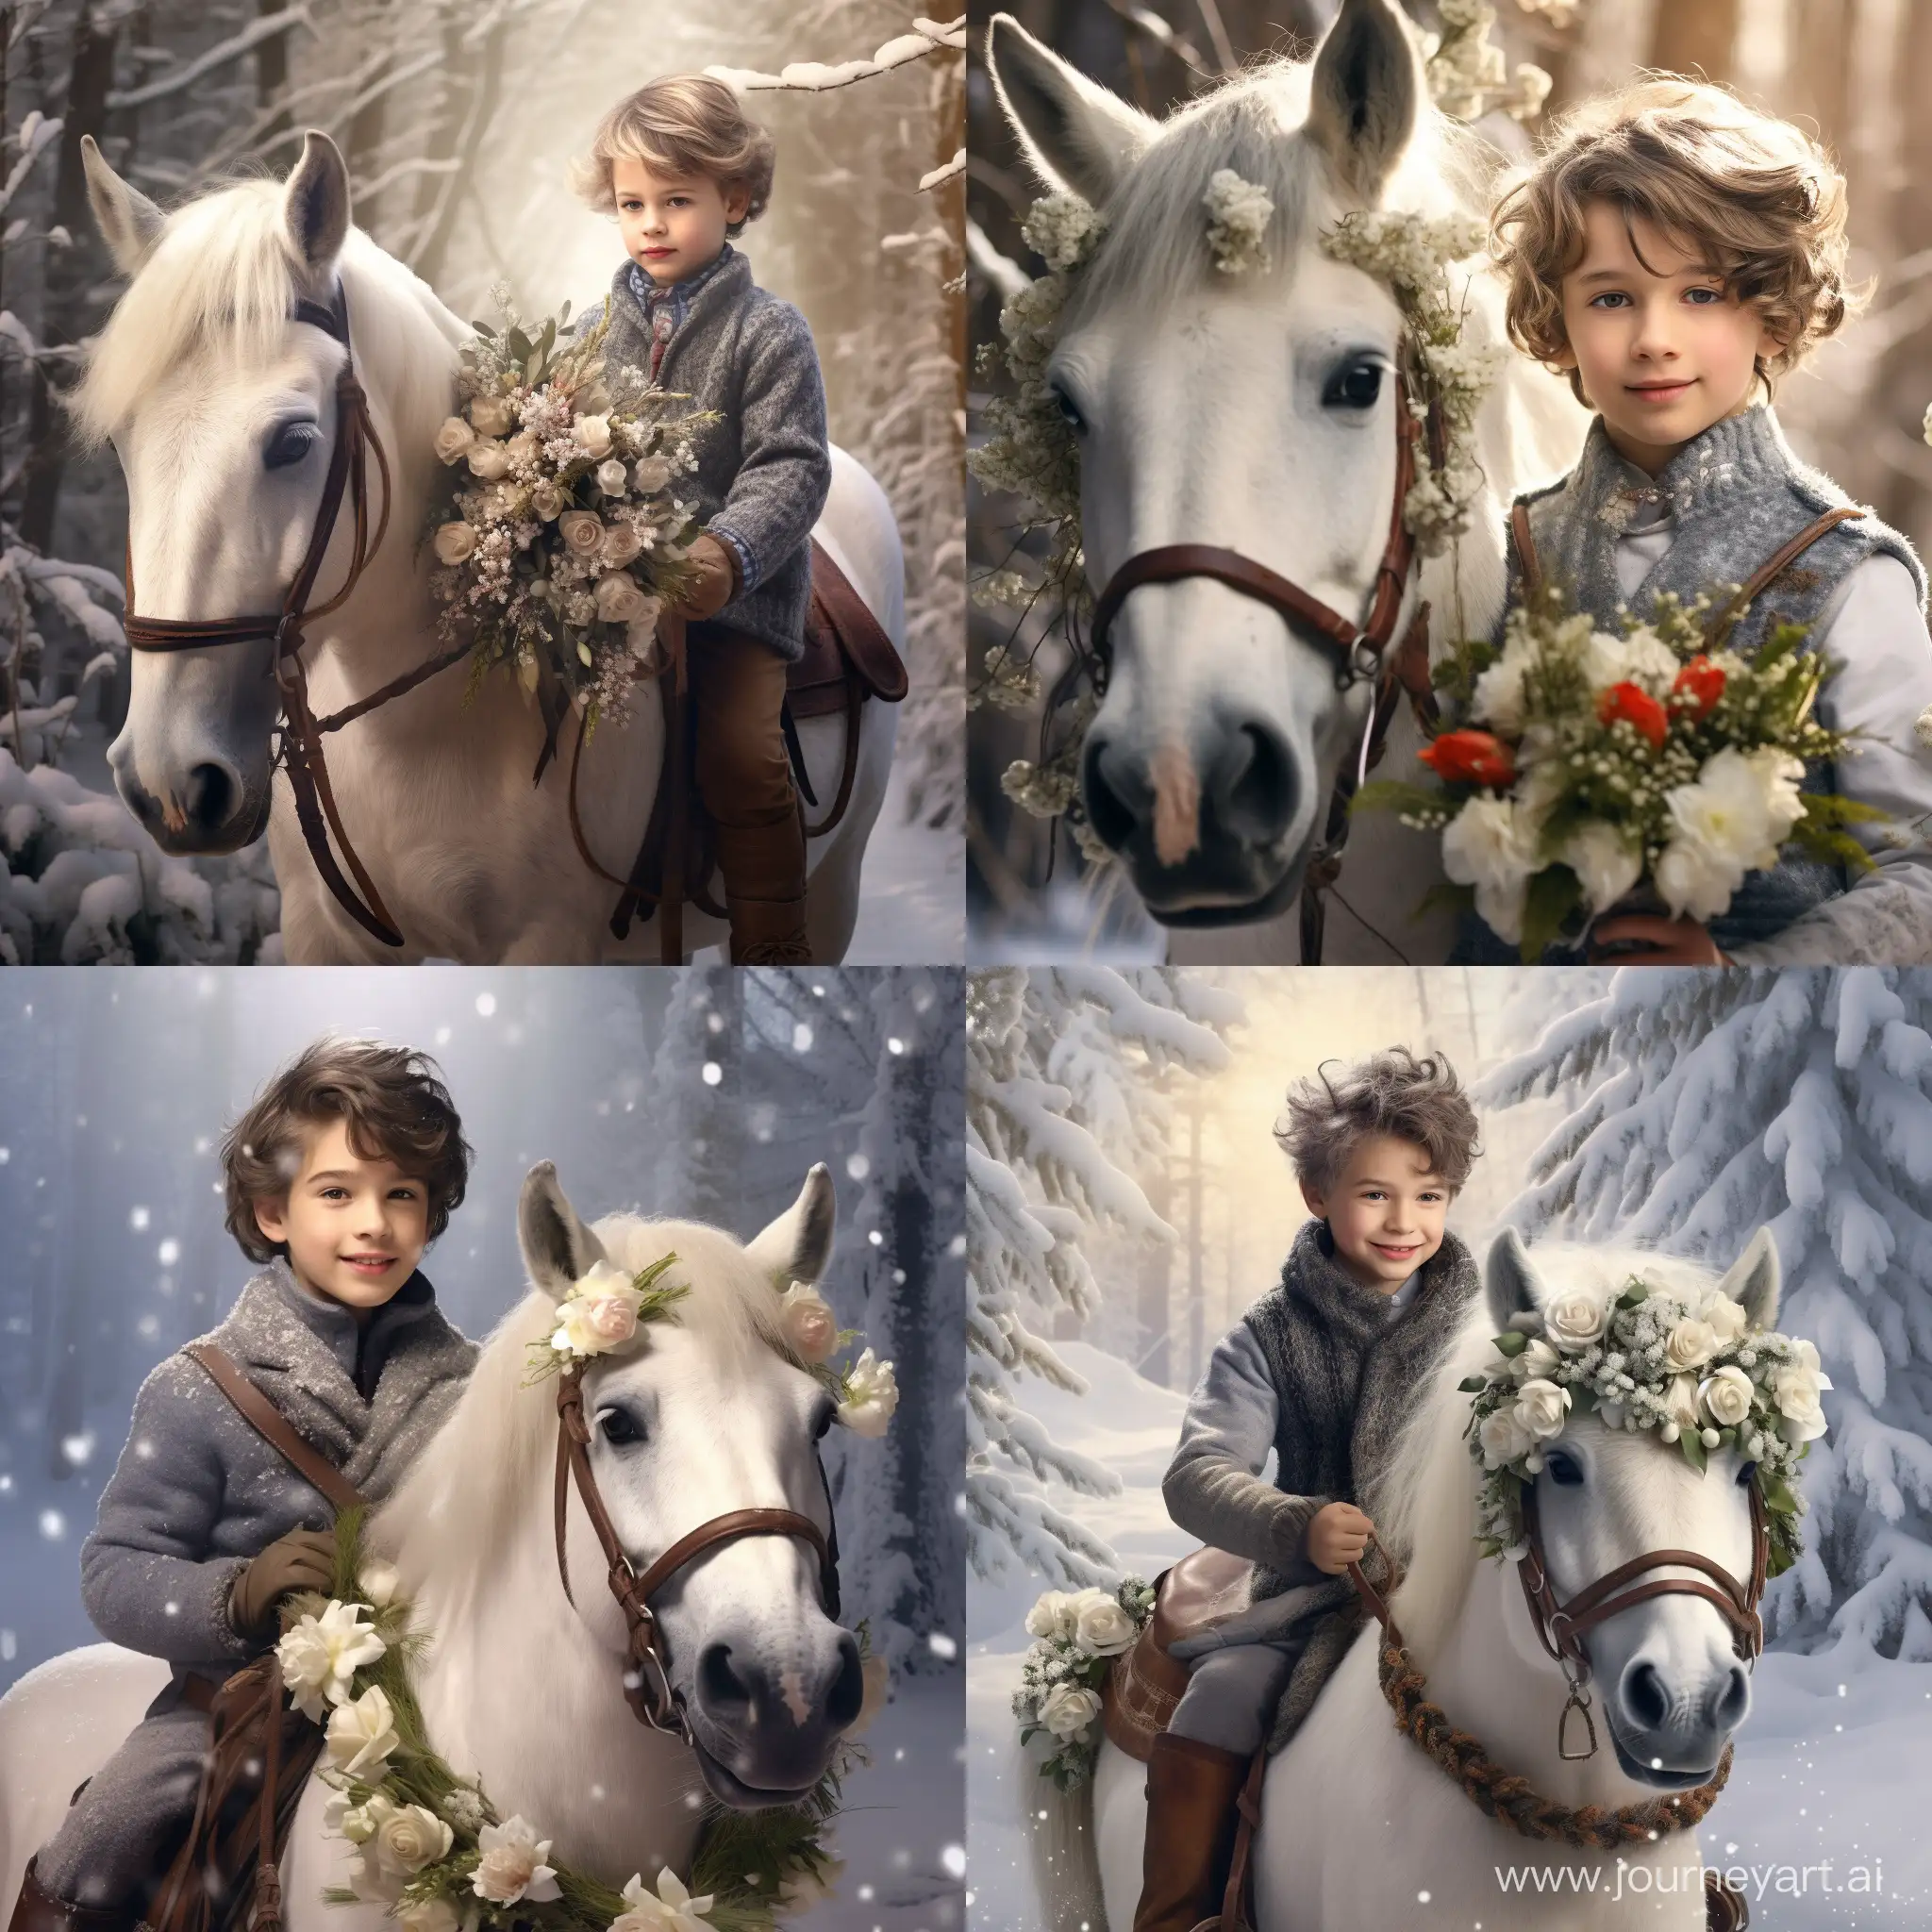 Весёлый мальчик - принц в сказочной одежде, скачет на шетлендской пони по заснеженному лесу, в руках принц держит букет цветов, зимний солнечный день, фотография, гиперреализм, высокое разрешение